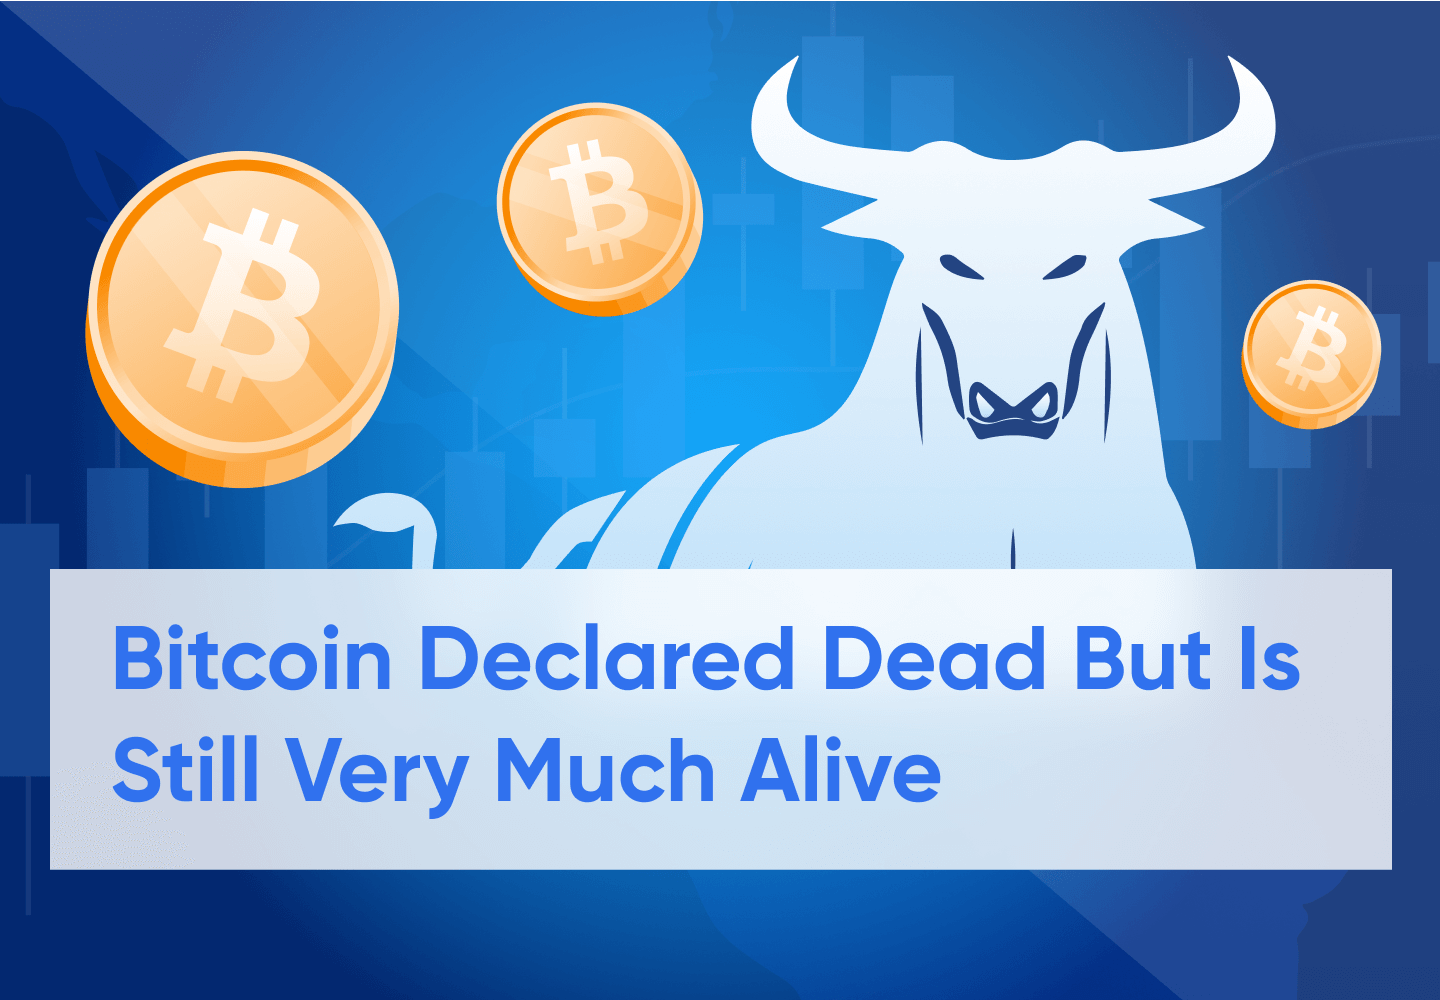 Bitcoin Being Proclaimed Dead Again is A Bullish Sign